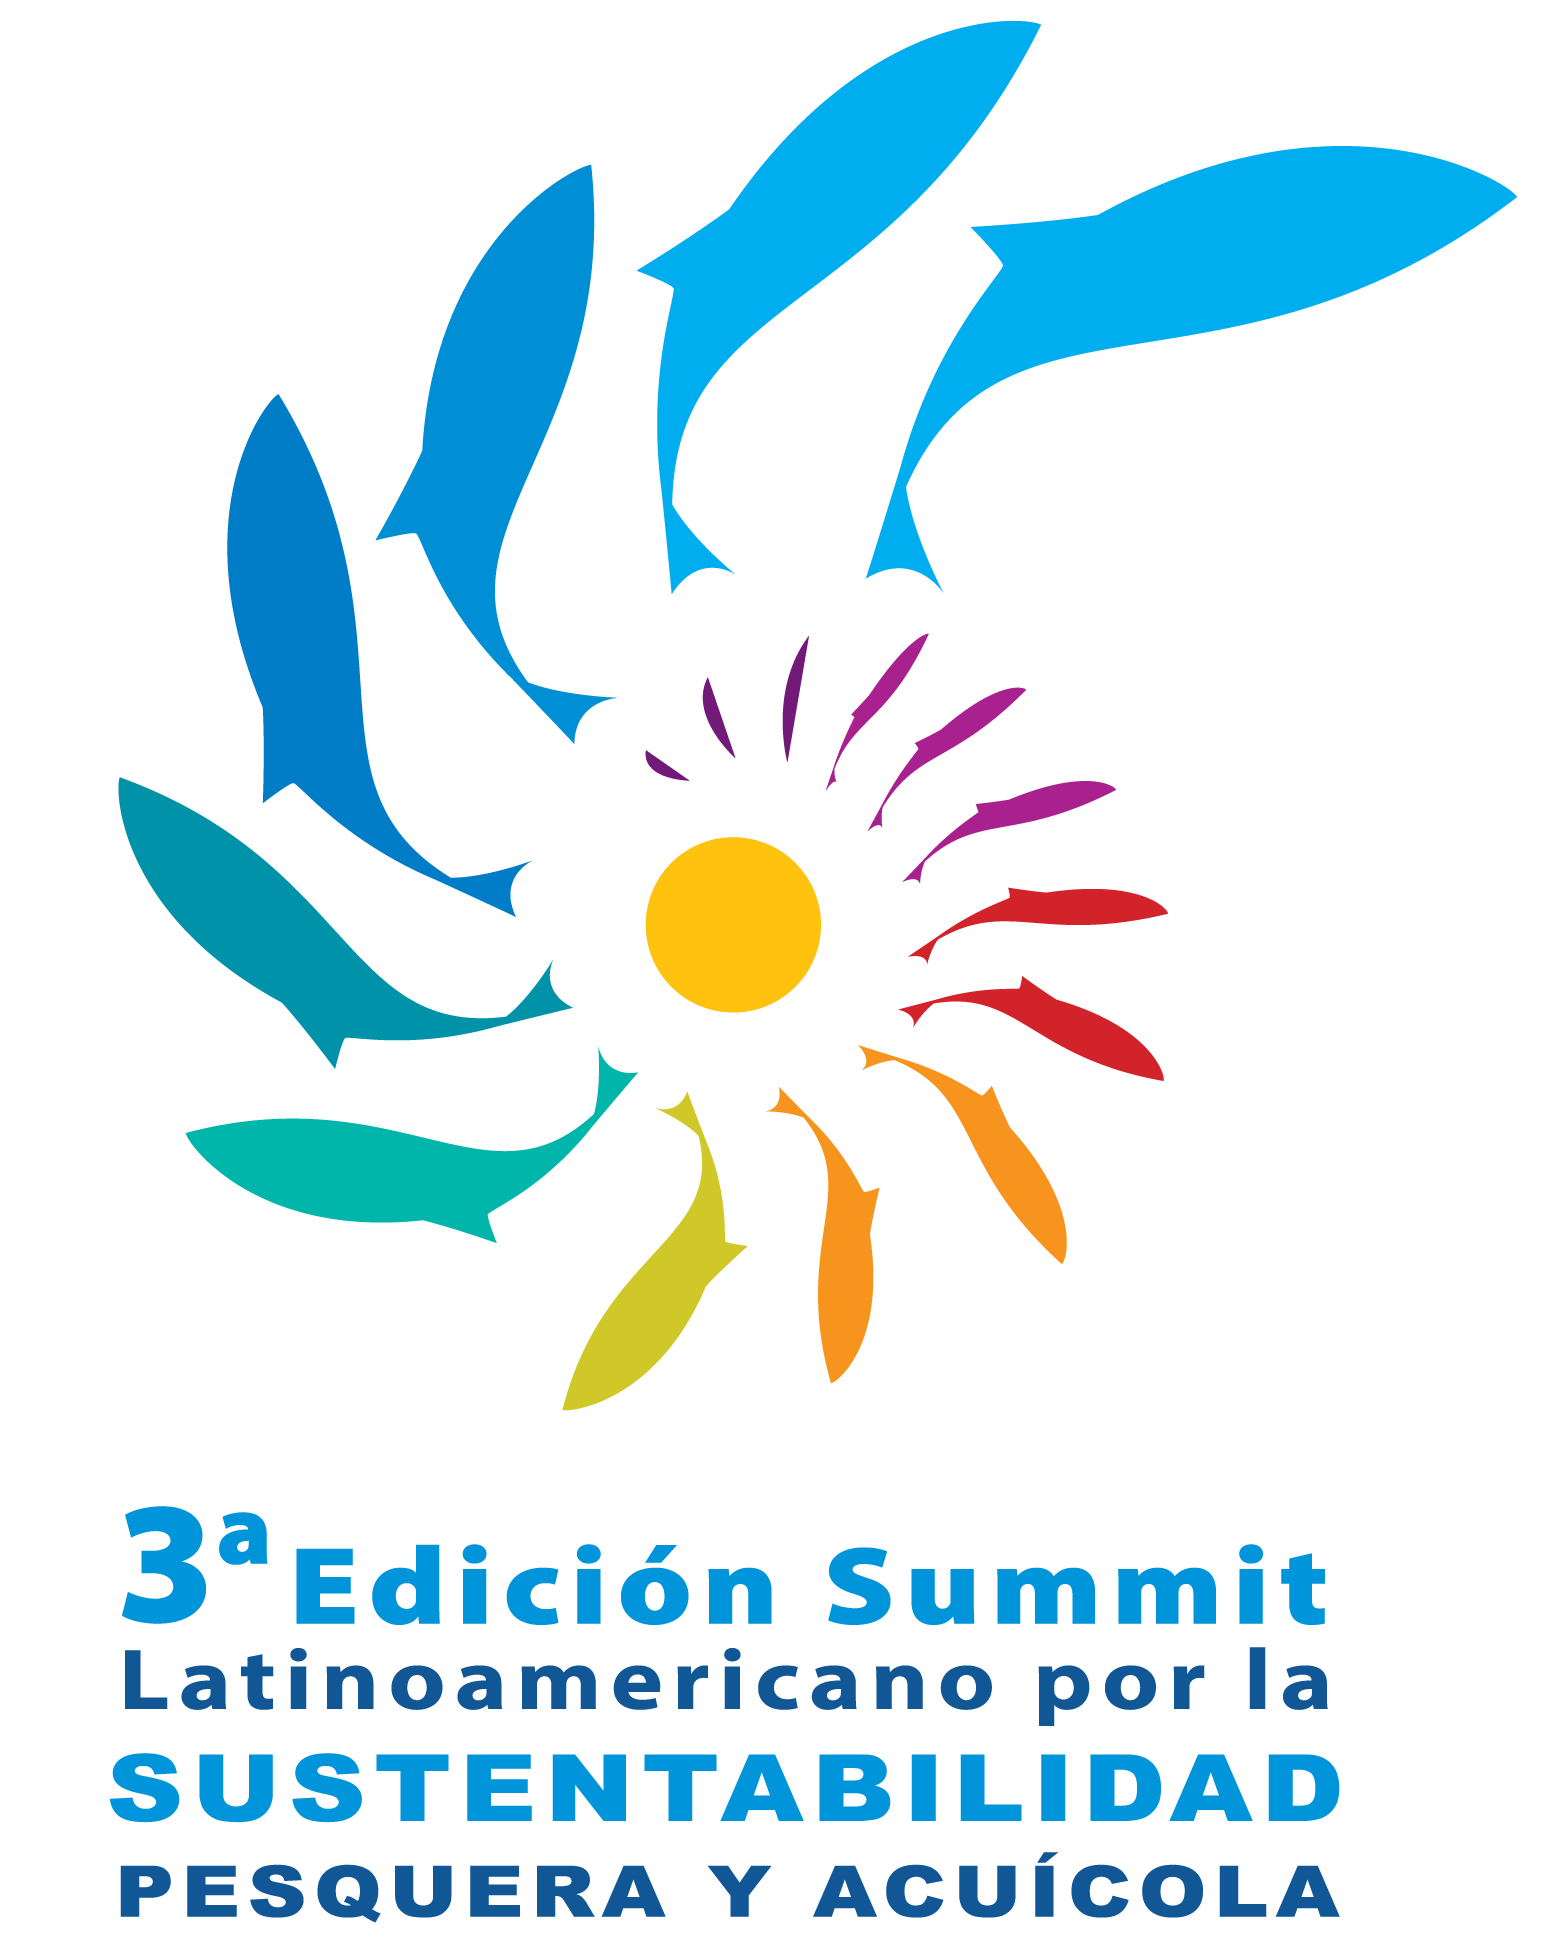 Invitan a lanzamiento oficial del Summit Latinoamericano por la Sustentabilidad Pesquera y Acuícola